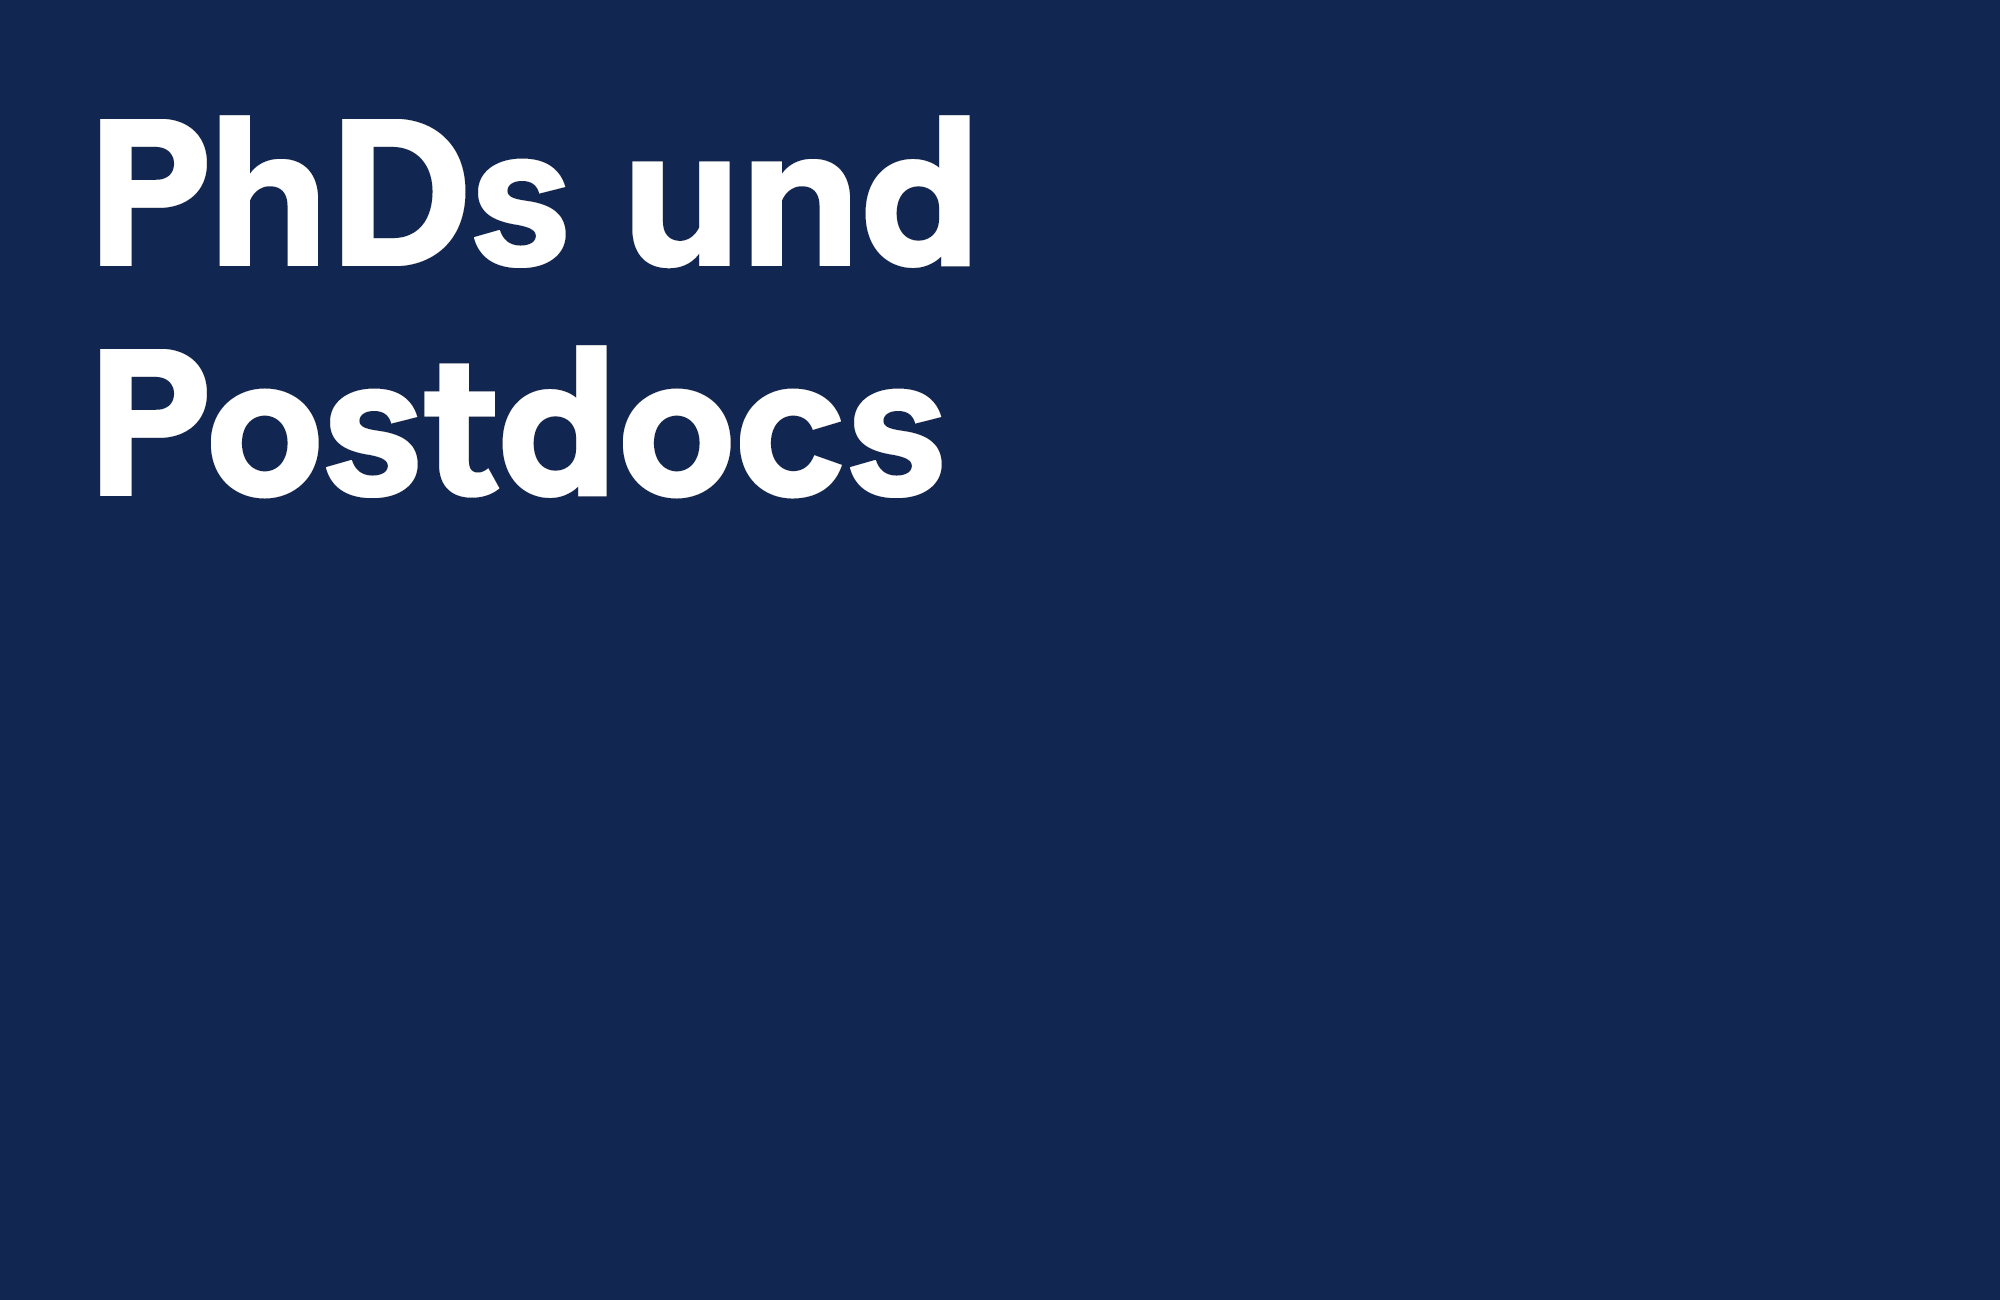 PhDs und Postdocs